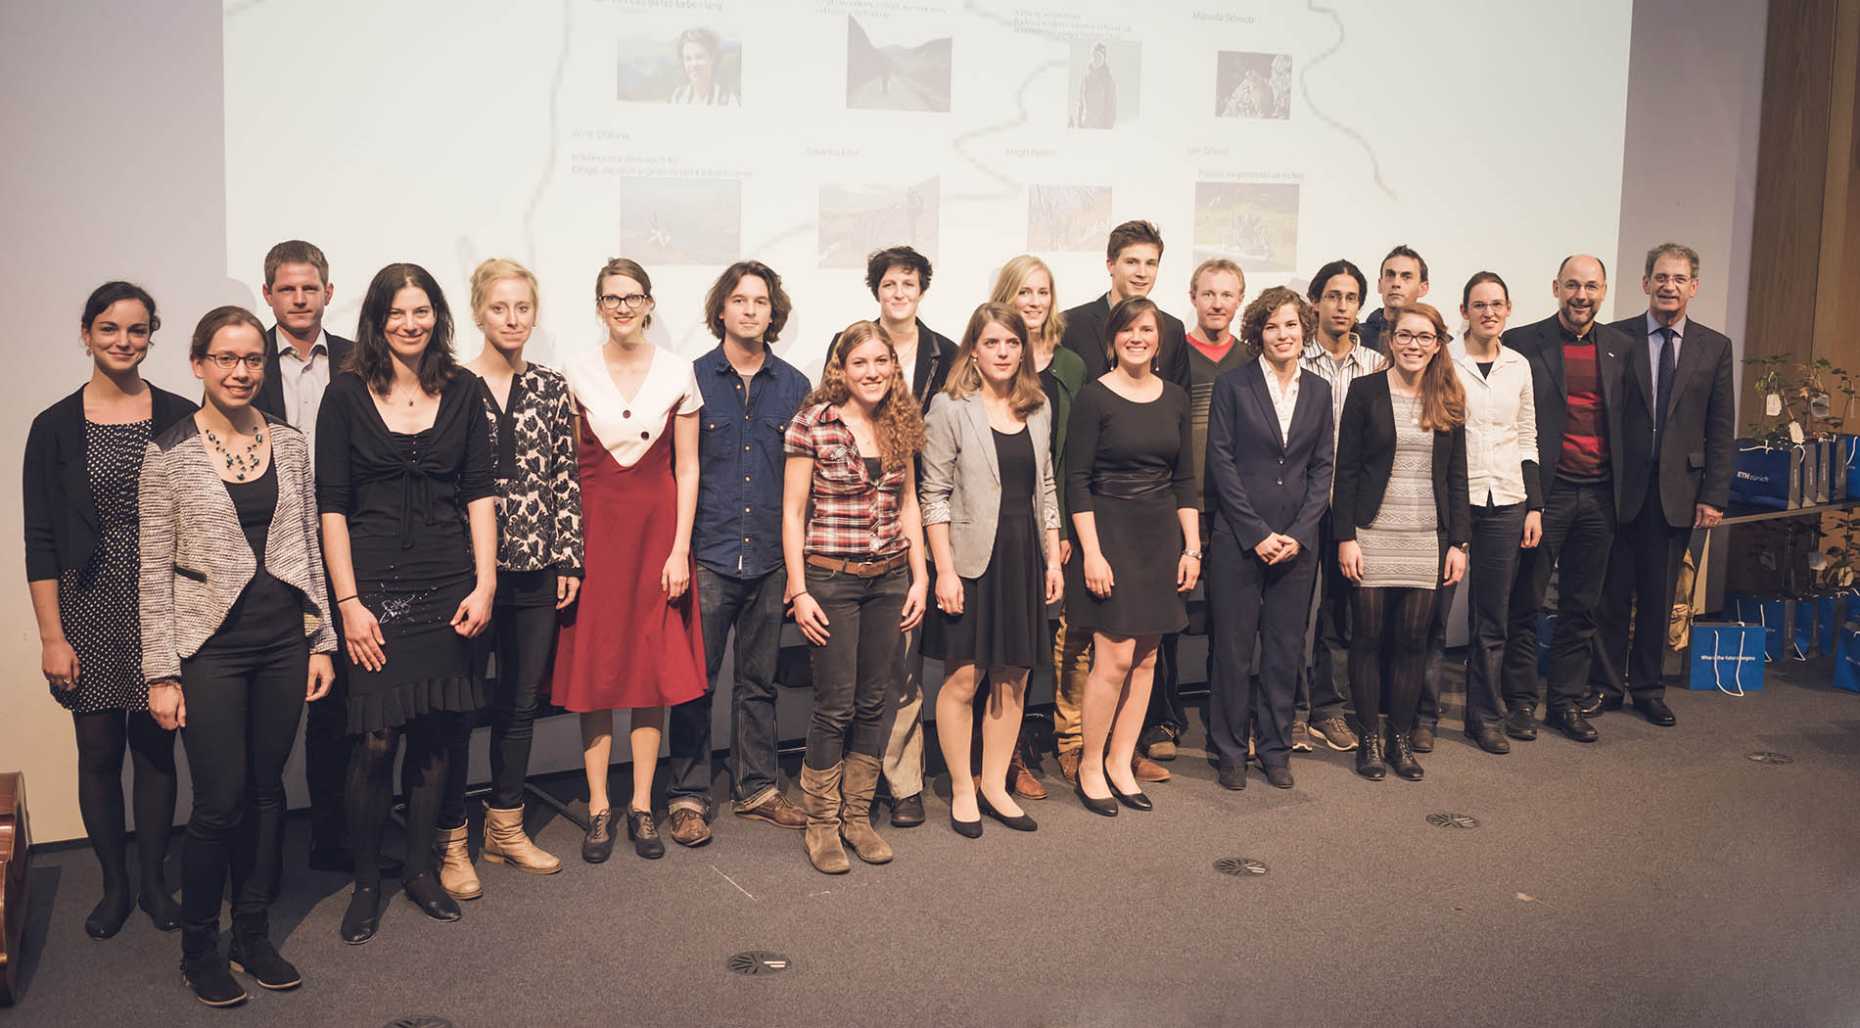 Enlarged view: Bild der Absolventinnen und Absolventen an der Masterfeier 2015